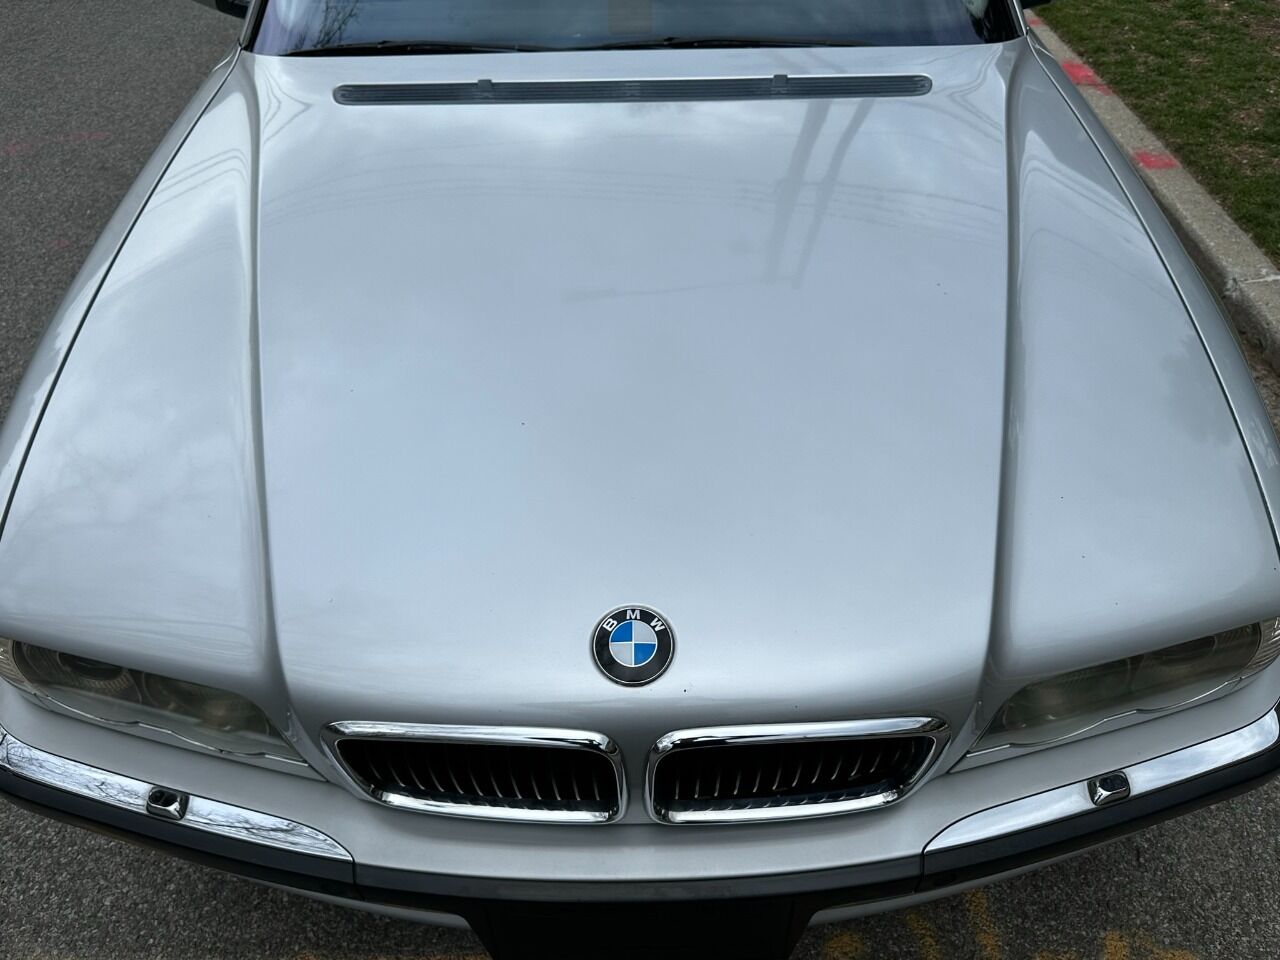 2001 BMW 7 Series Sedan - $8,900